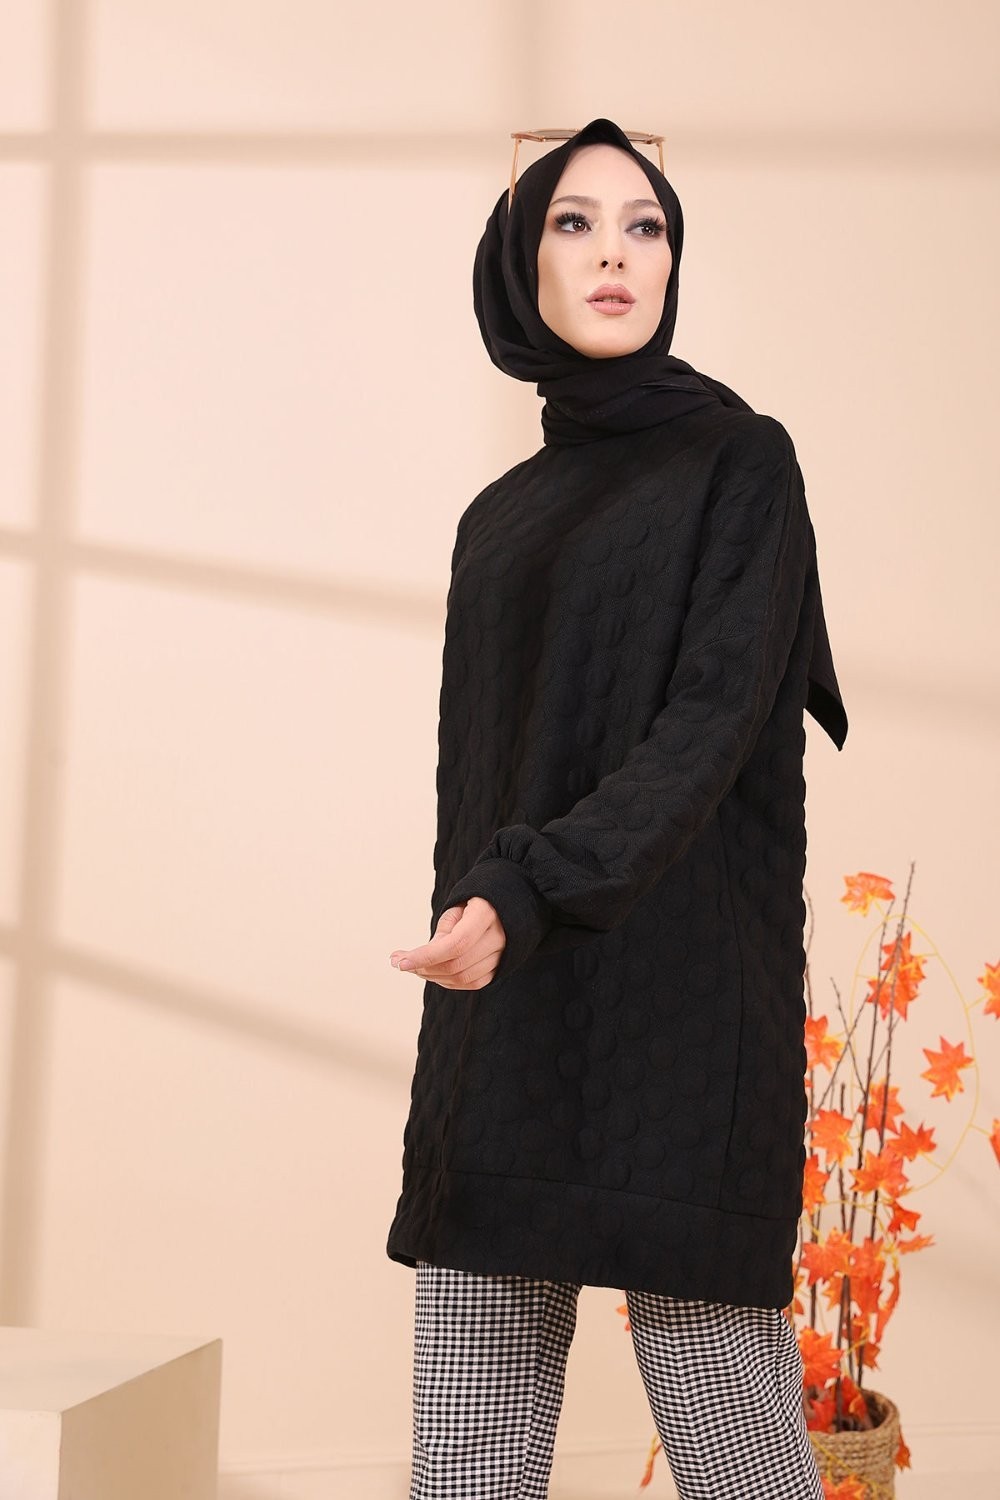 Tunique-pull pour femme (Vêtement Hijab chaud - Saisons Automne Hiver) - Couleur  noir - Prêt à porter et accessoires sur